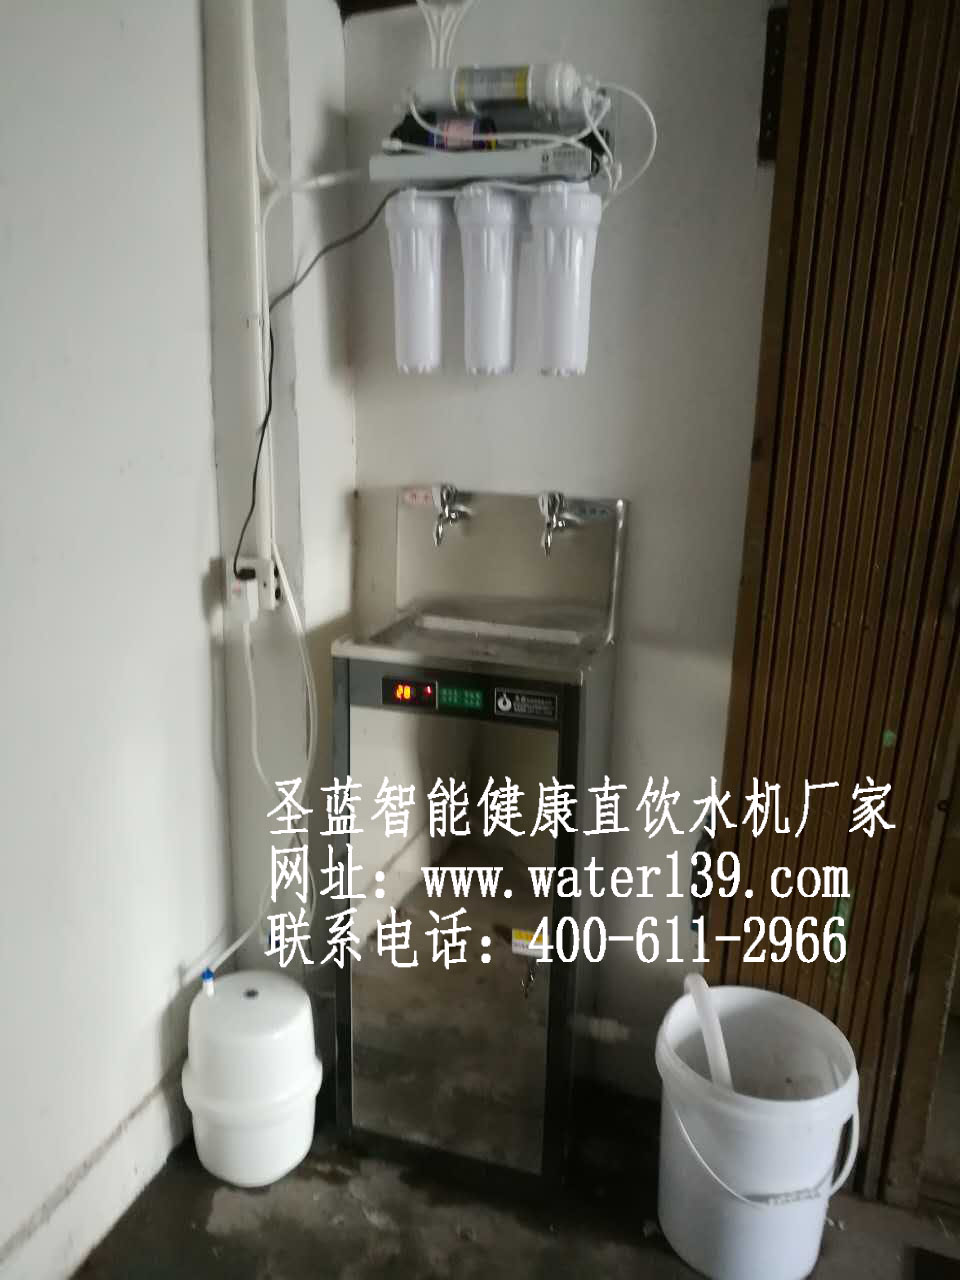 深圳圣蓝净水设备科技有限公司